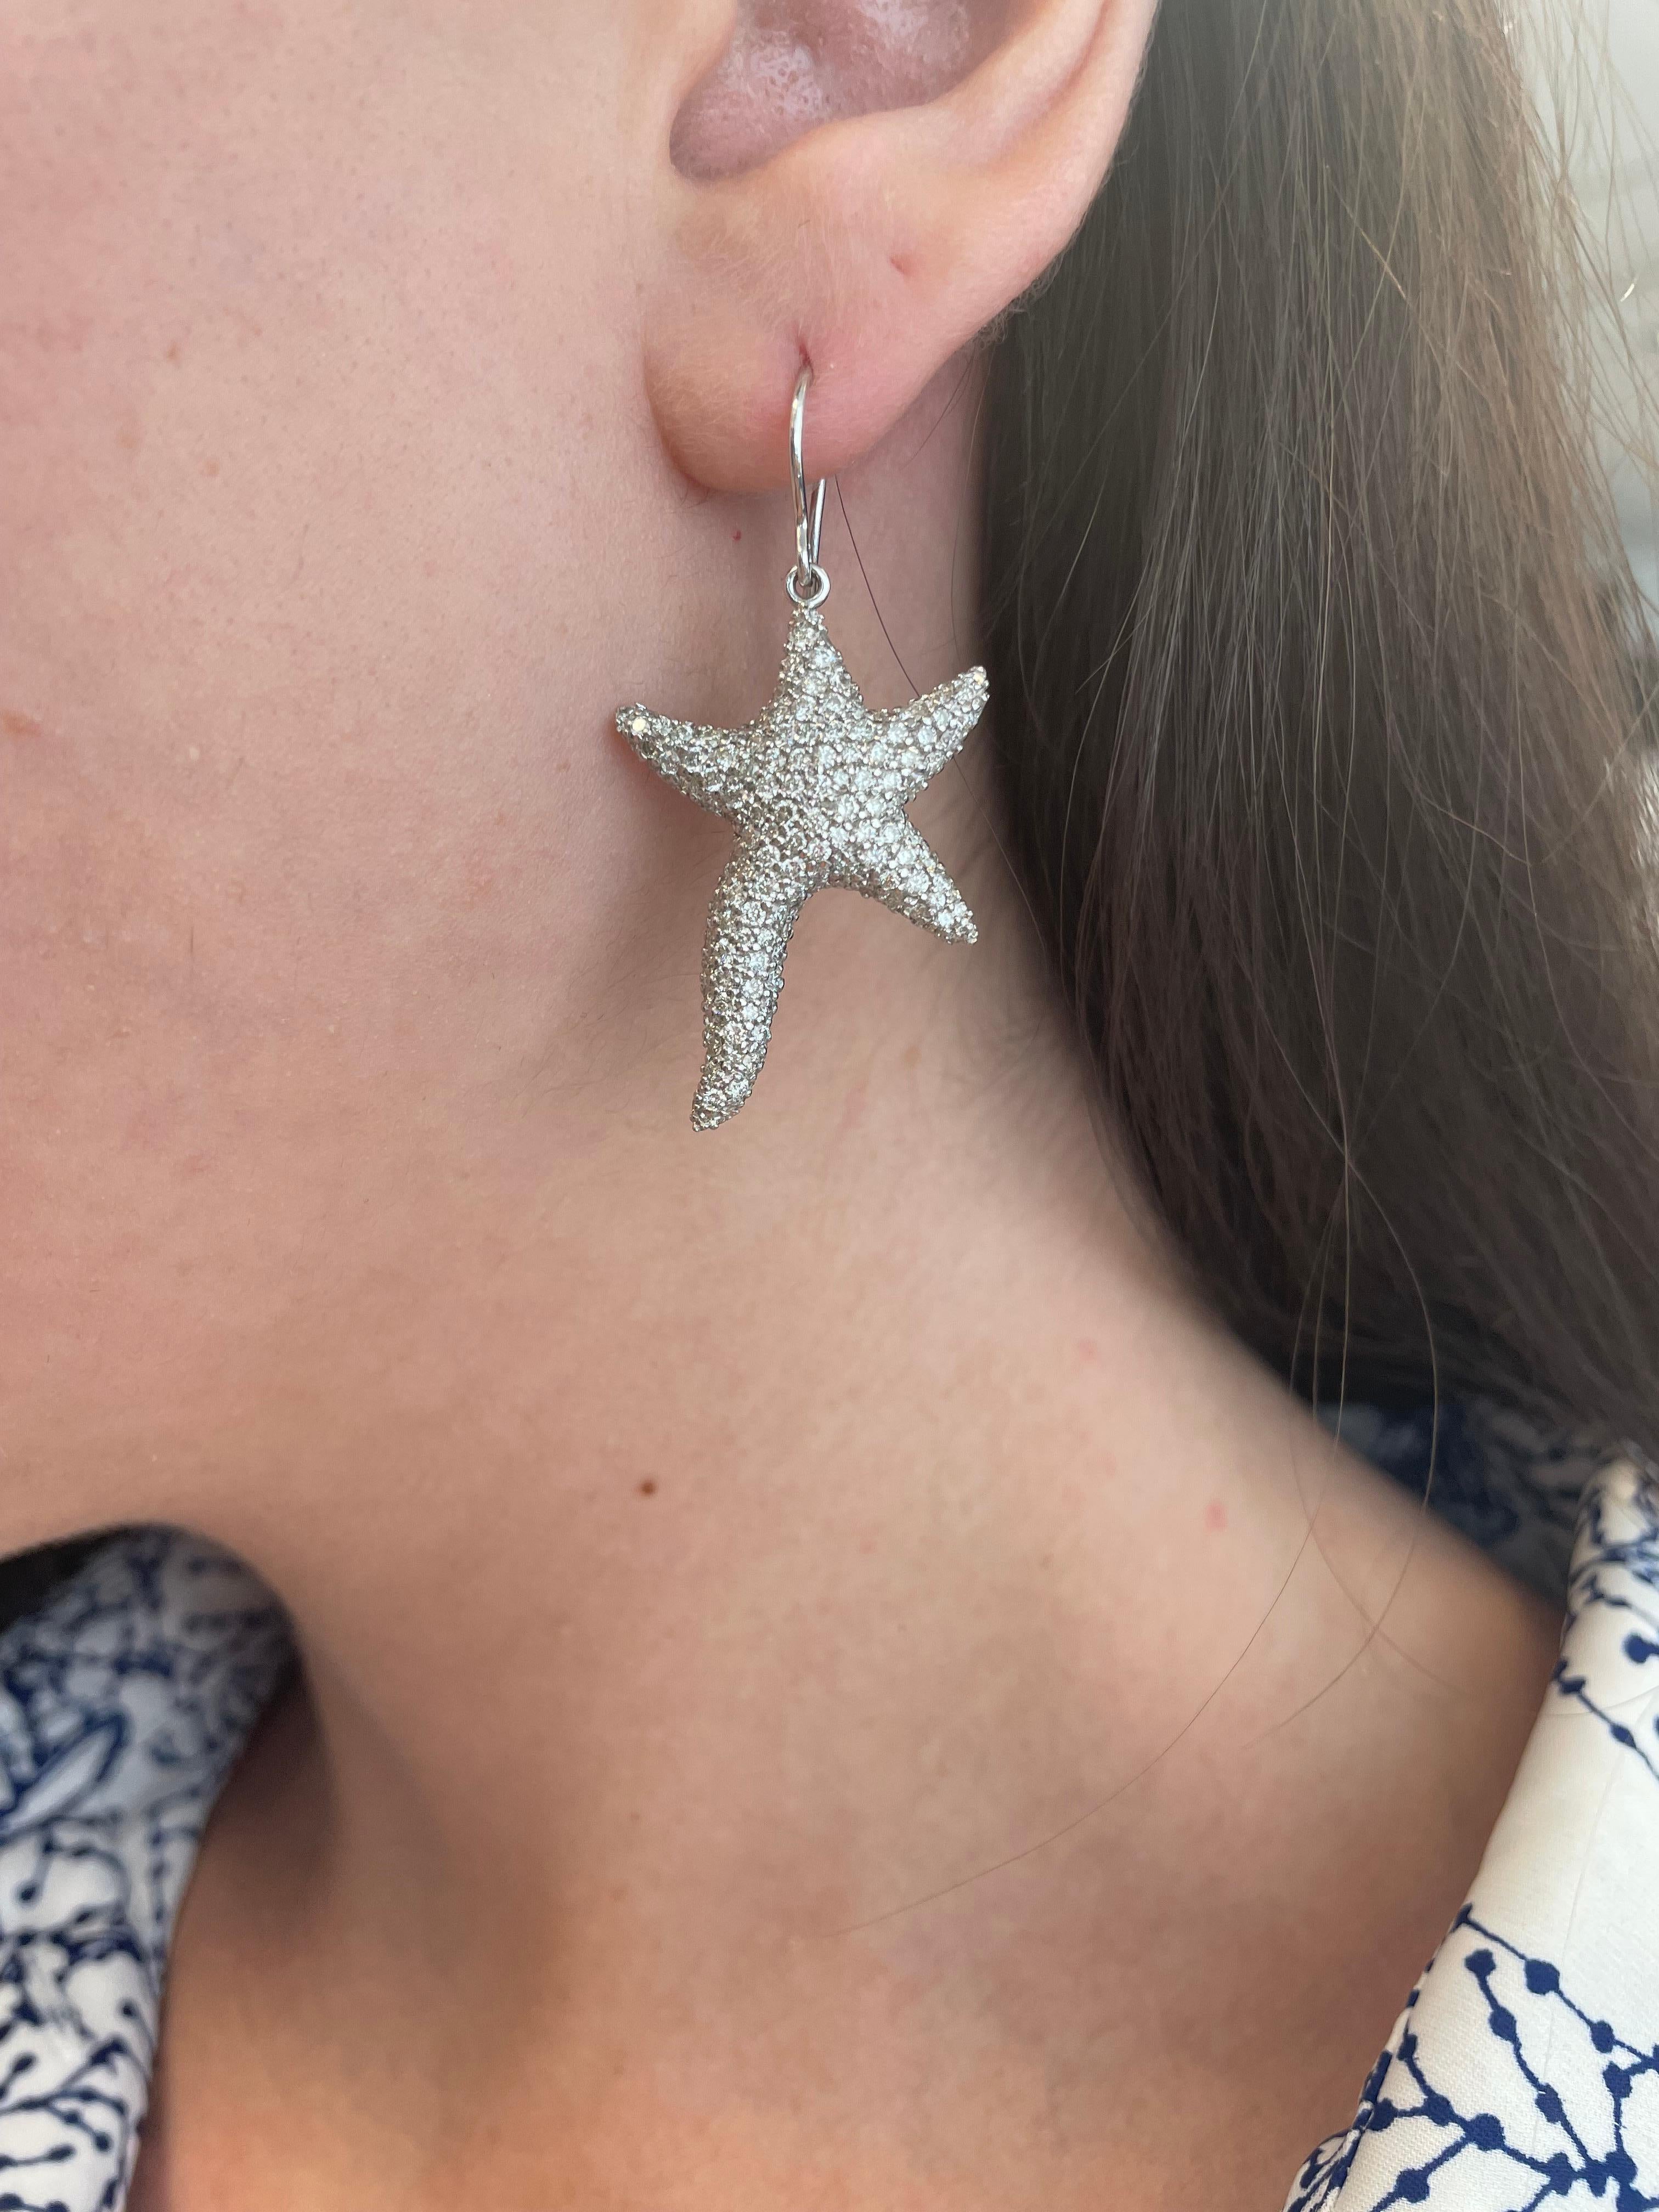 Magnifiques boucles d'oreilles étoile de mer en diamants sertis en pavé.
4.58ct de diamants ronds et brillants, de couleur G/H et de pureté SI. or blanc 18 carats. 
Accompagné d'une évaluation actualisée par un GIA G.G. sur demande. Veuillez nous